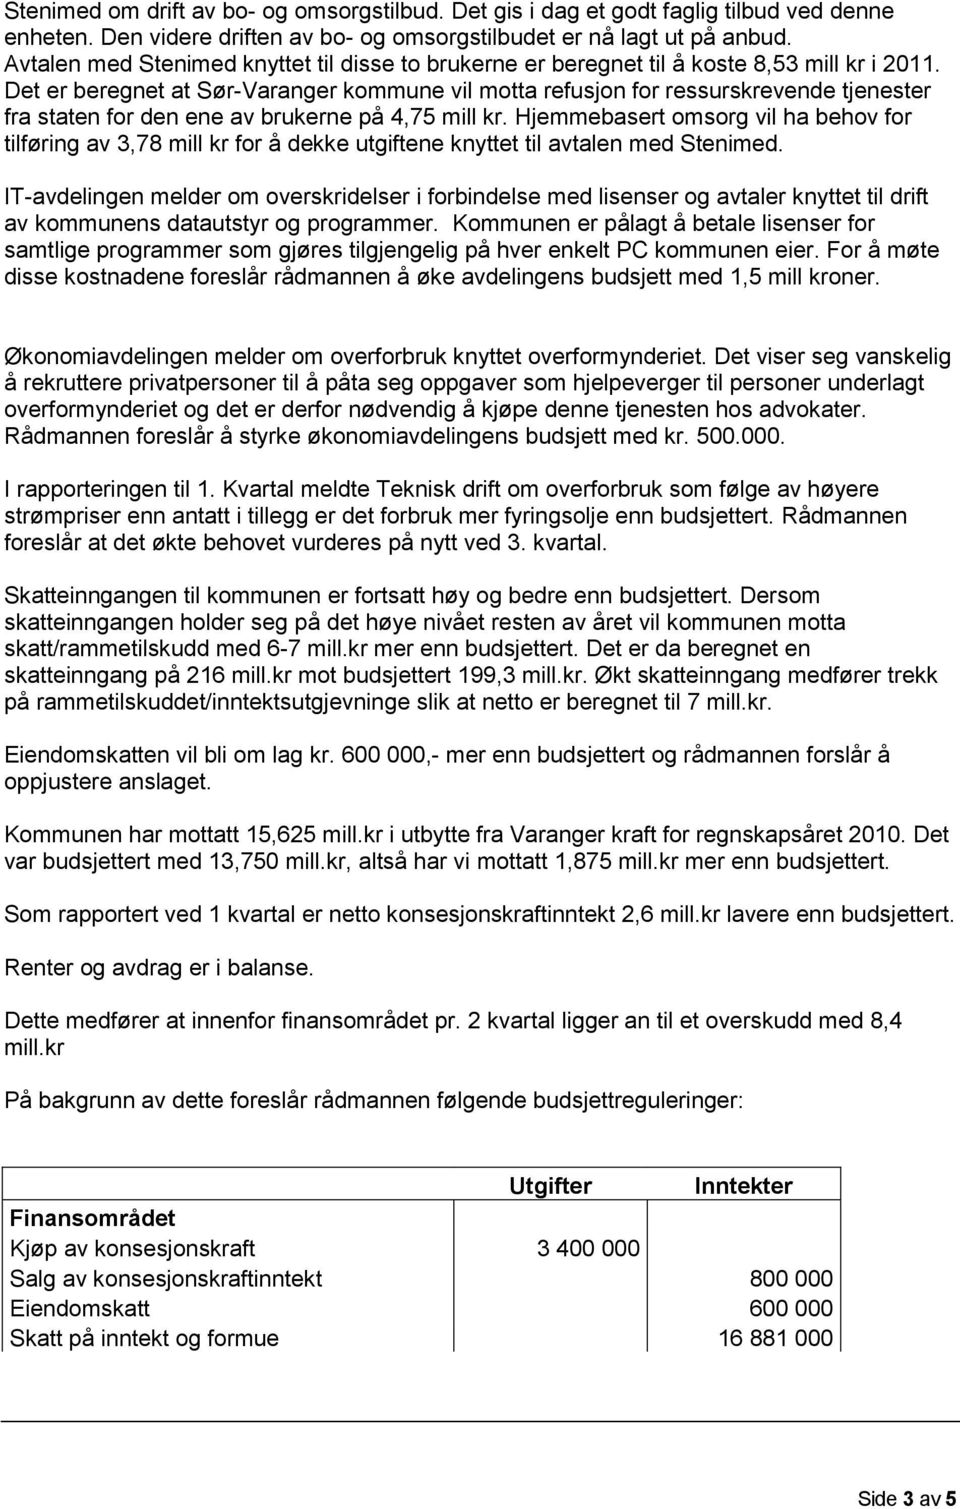 Det er beregnet at Sør-Varanger kommune vil motta refusjon for ressurskrevende tjenester fra staten for den ene av brukerne på 4,75 mill kr.